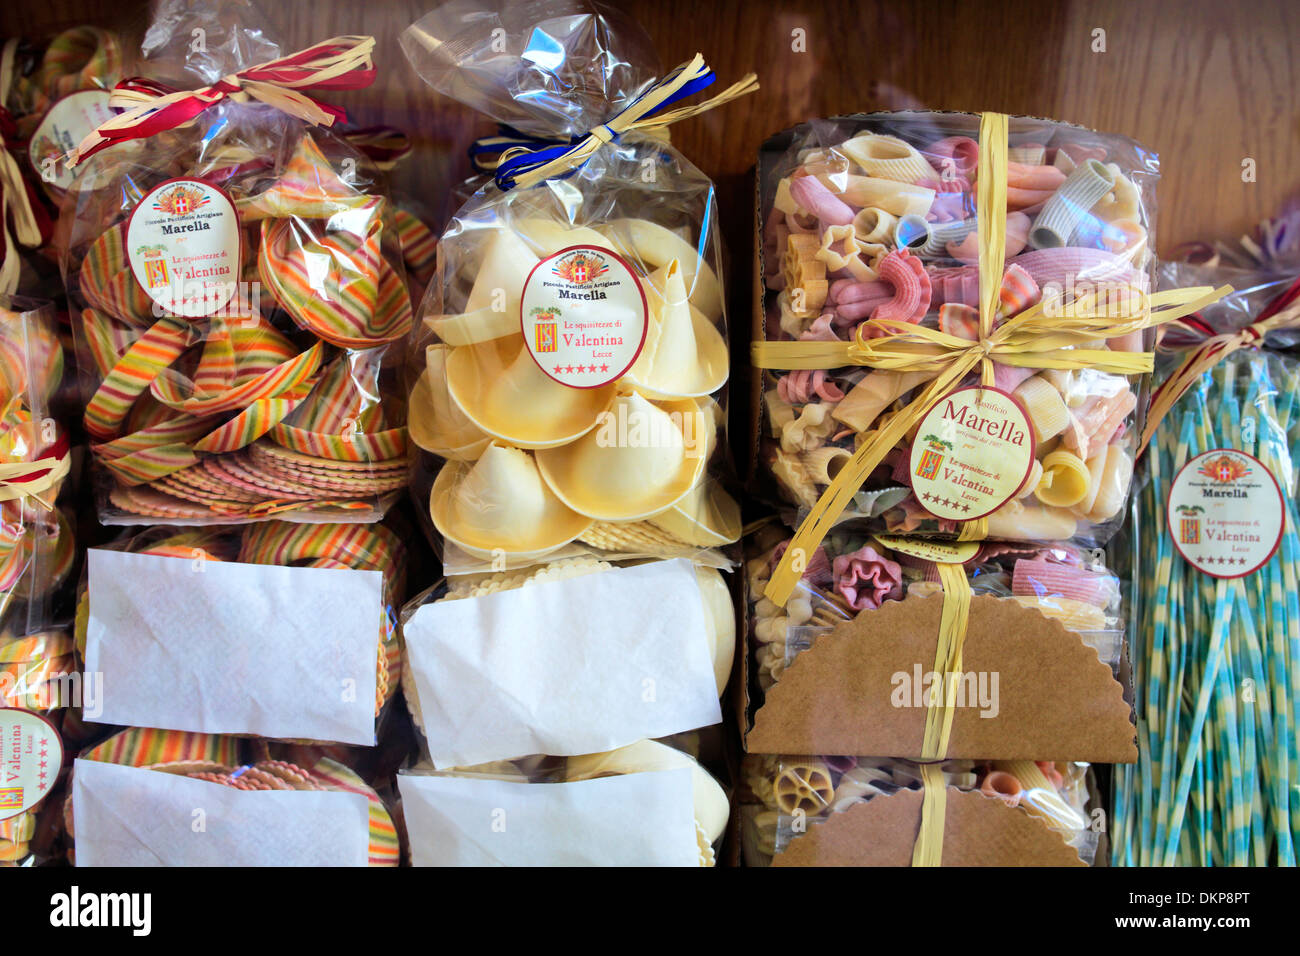 Locali di pasta secca shop, Lecce, Puglia, Italia Foto Stock